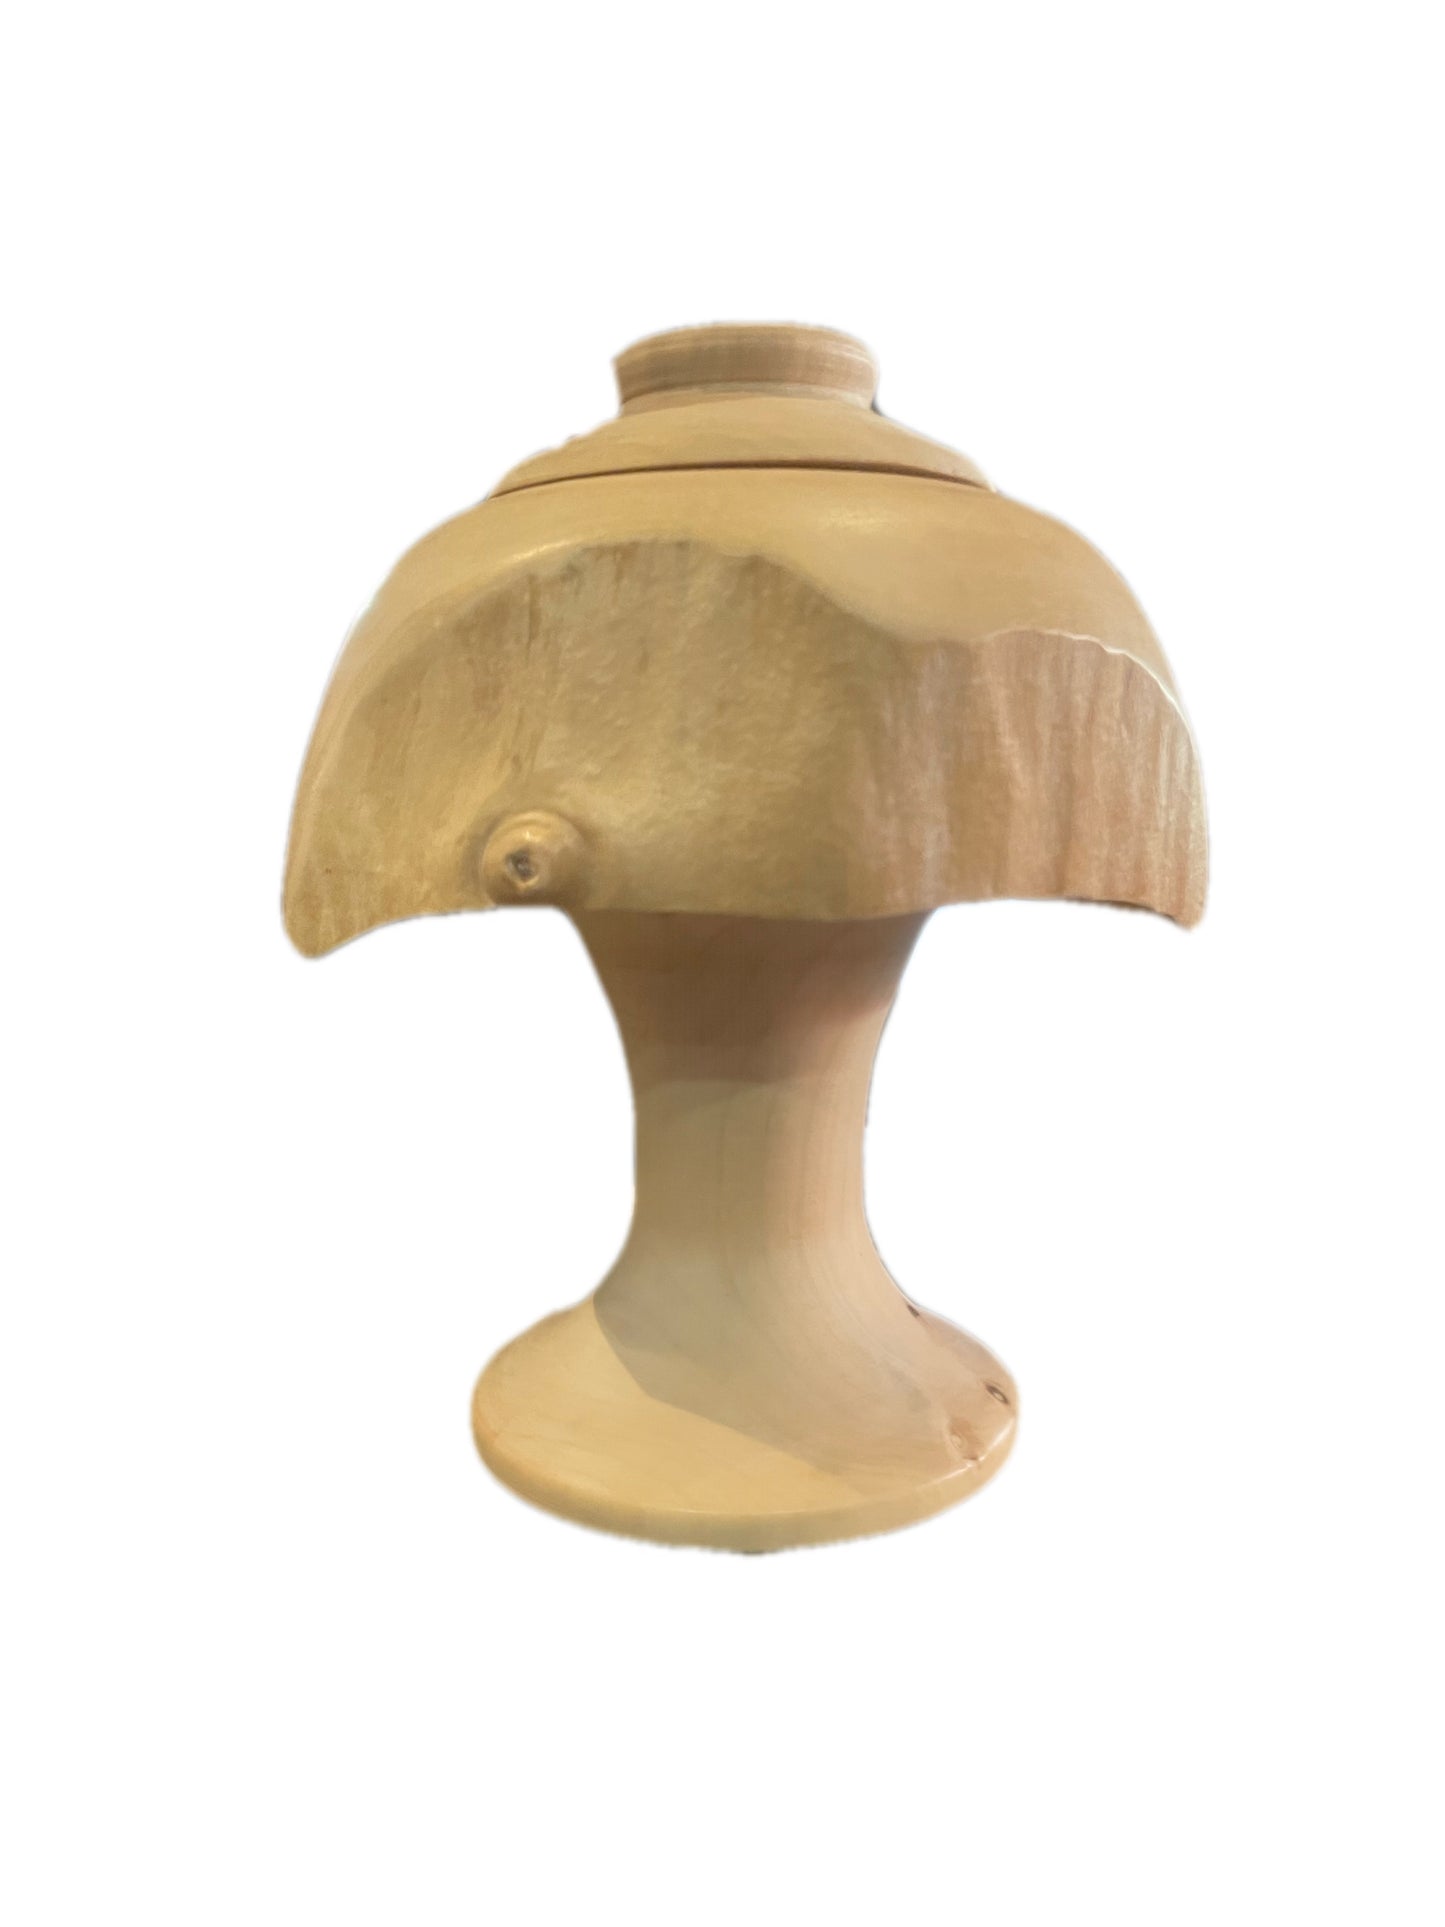 Maple Mushroom With Lid